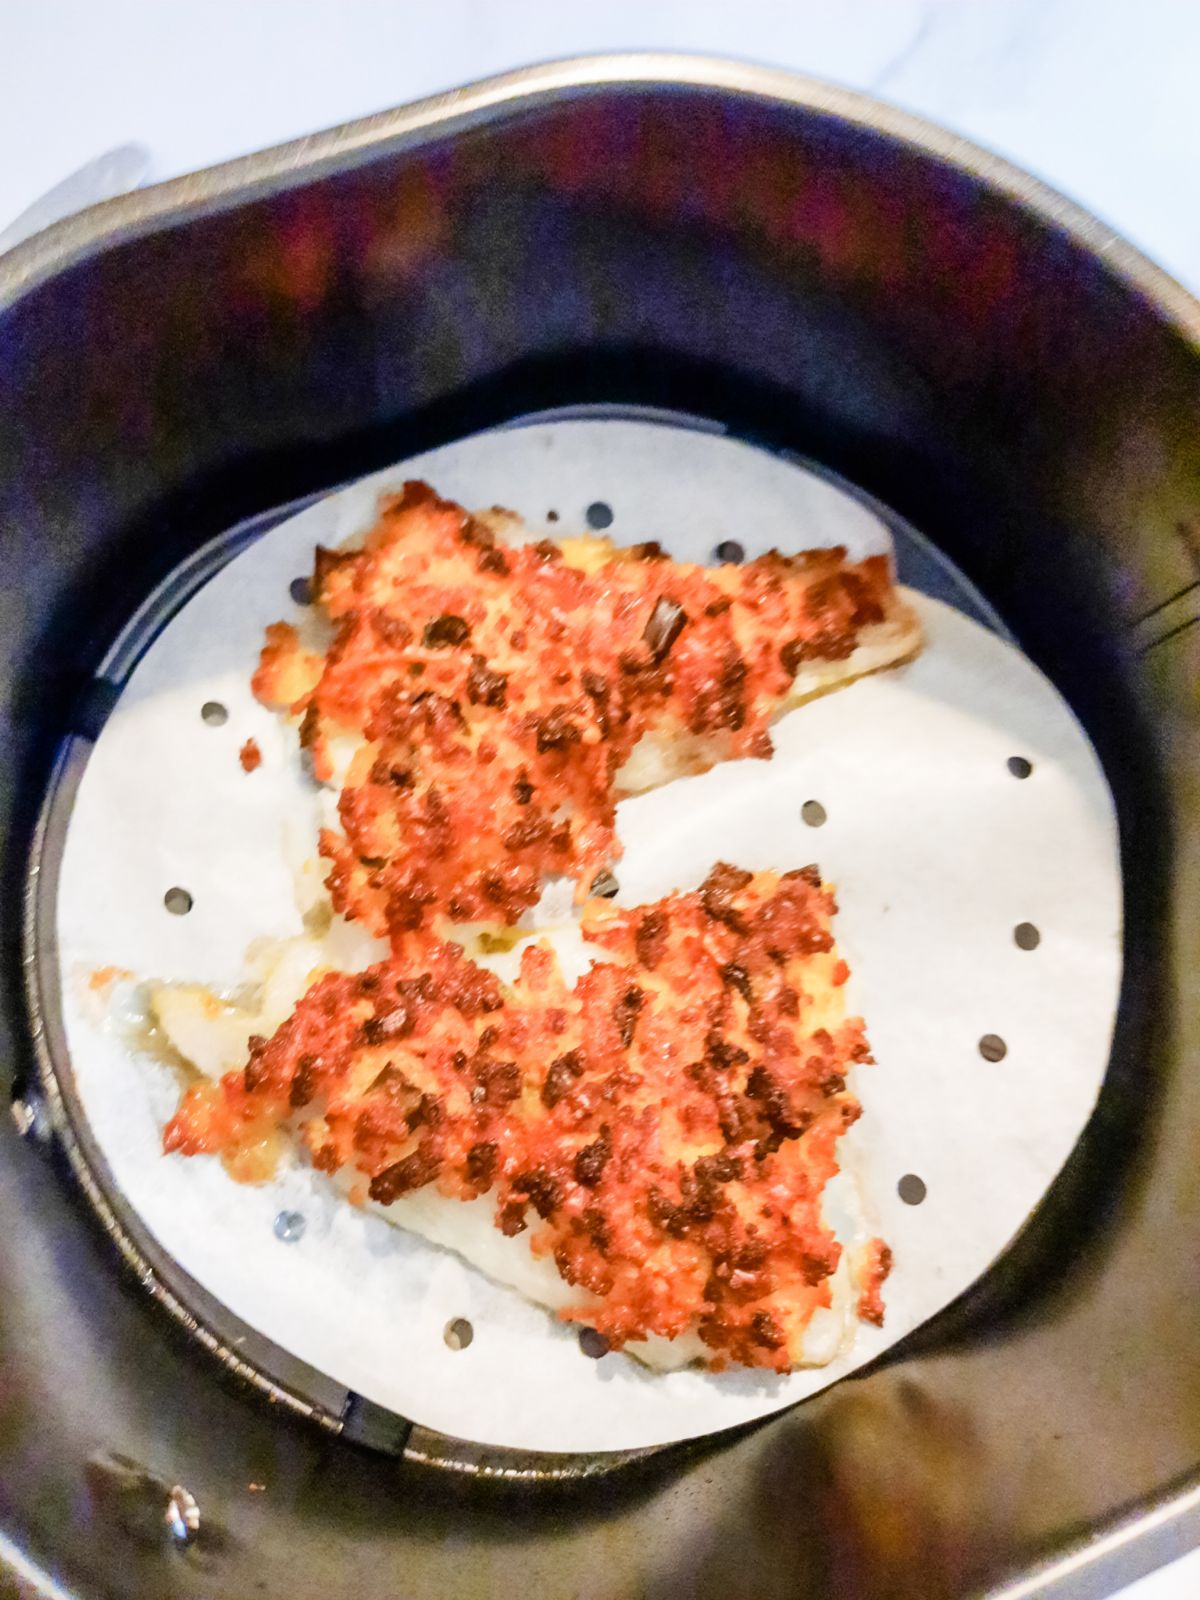 Fried Parmesan cod in an air fryer.